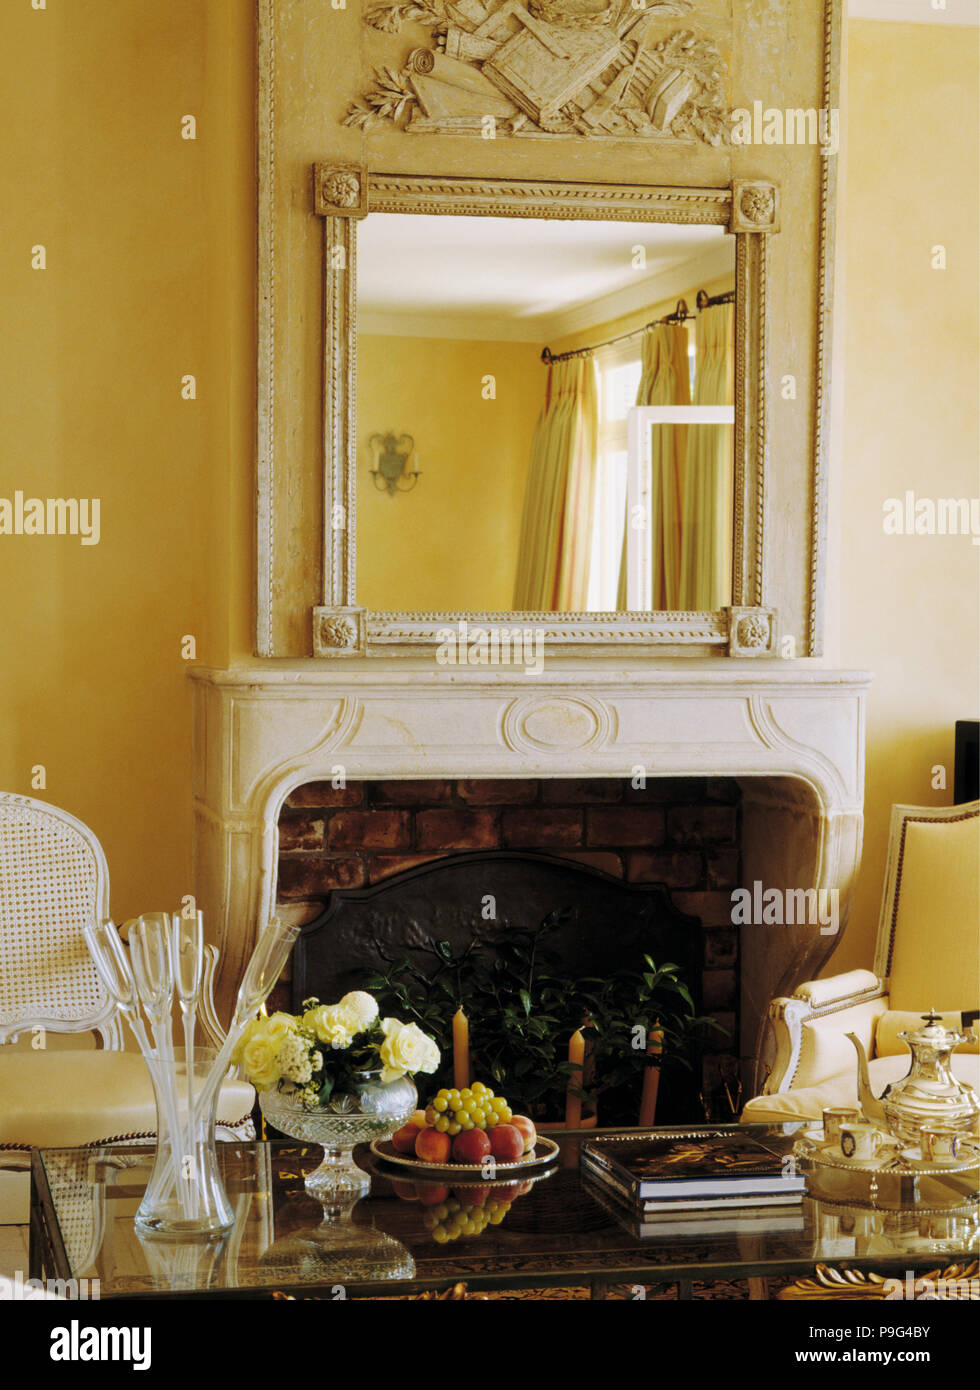 Miroir décoré en jaune au-dessus de cheminée en marbre salon du littoral Français Banque D'Images